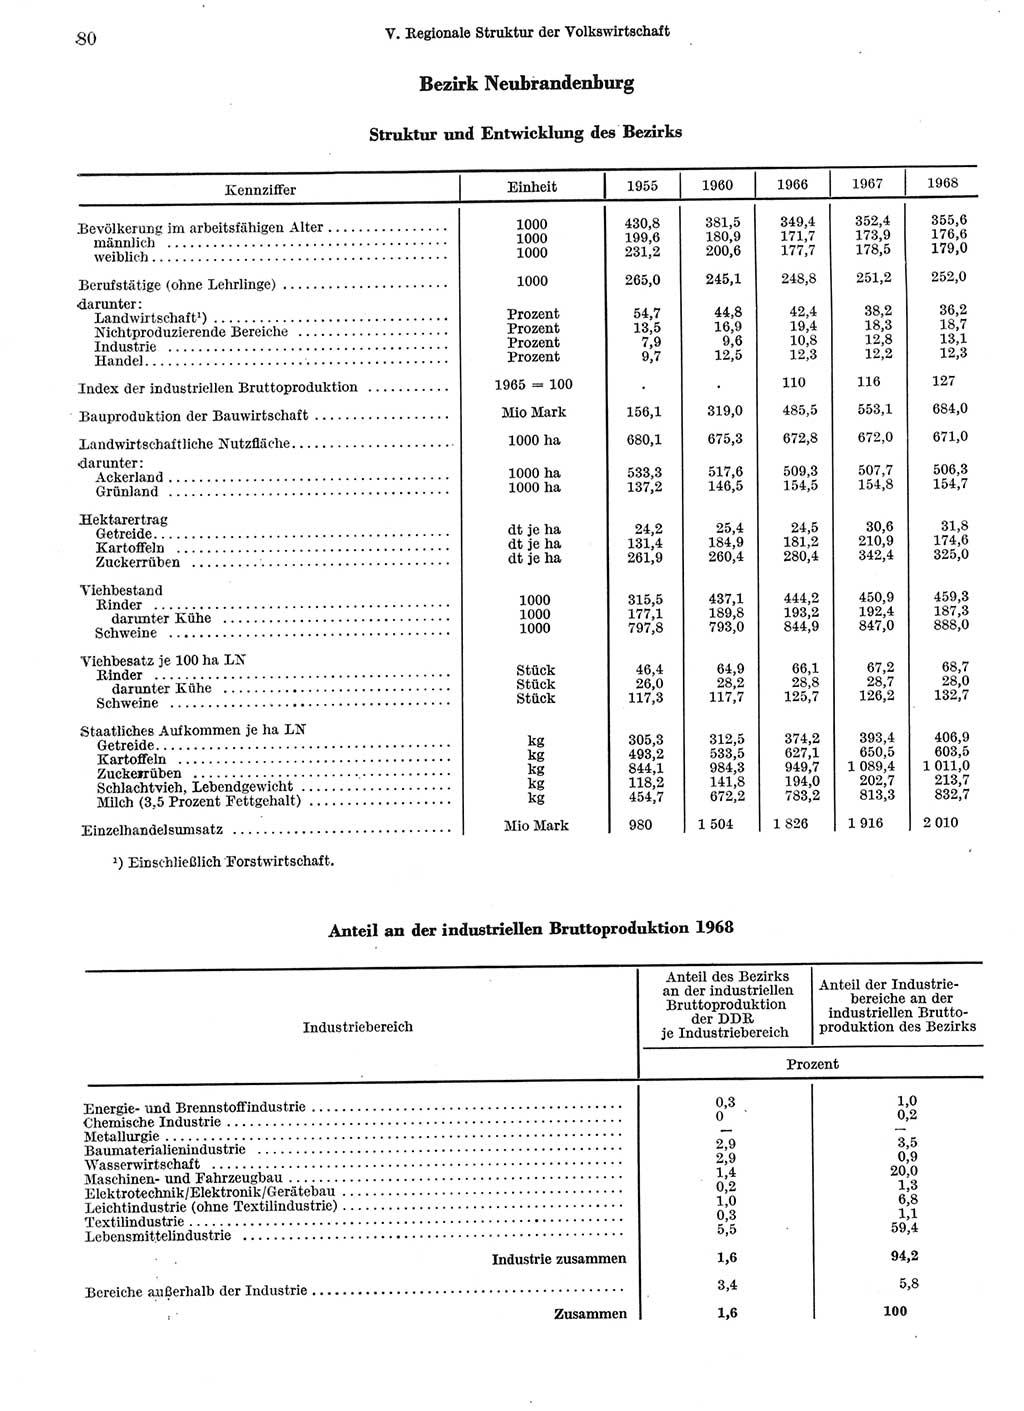 Statistisches Jahrbuch der Deutschen Demokratischen Republik (DDR) 1969, Seite 80 (Stat. Jb. DDR 1969, S. 80)